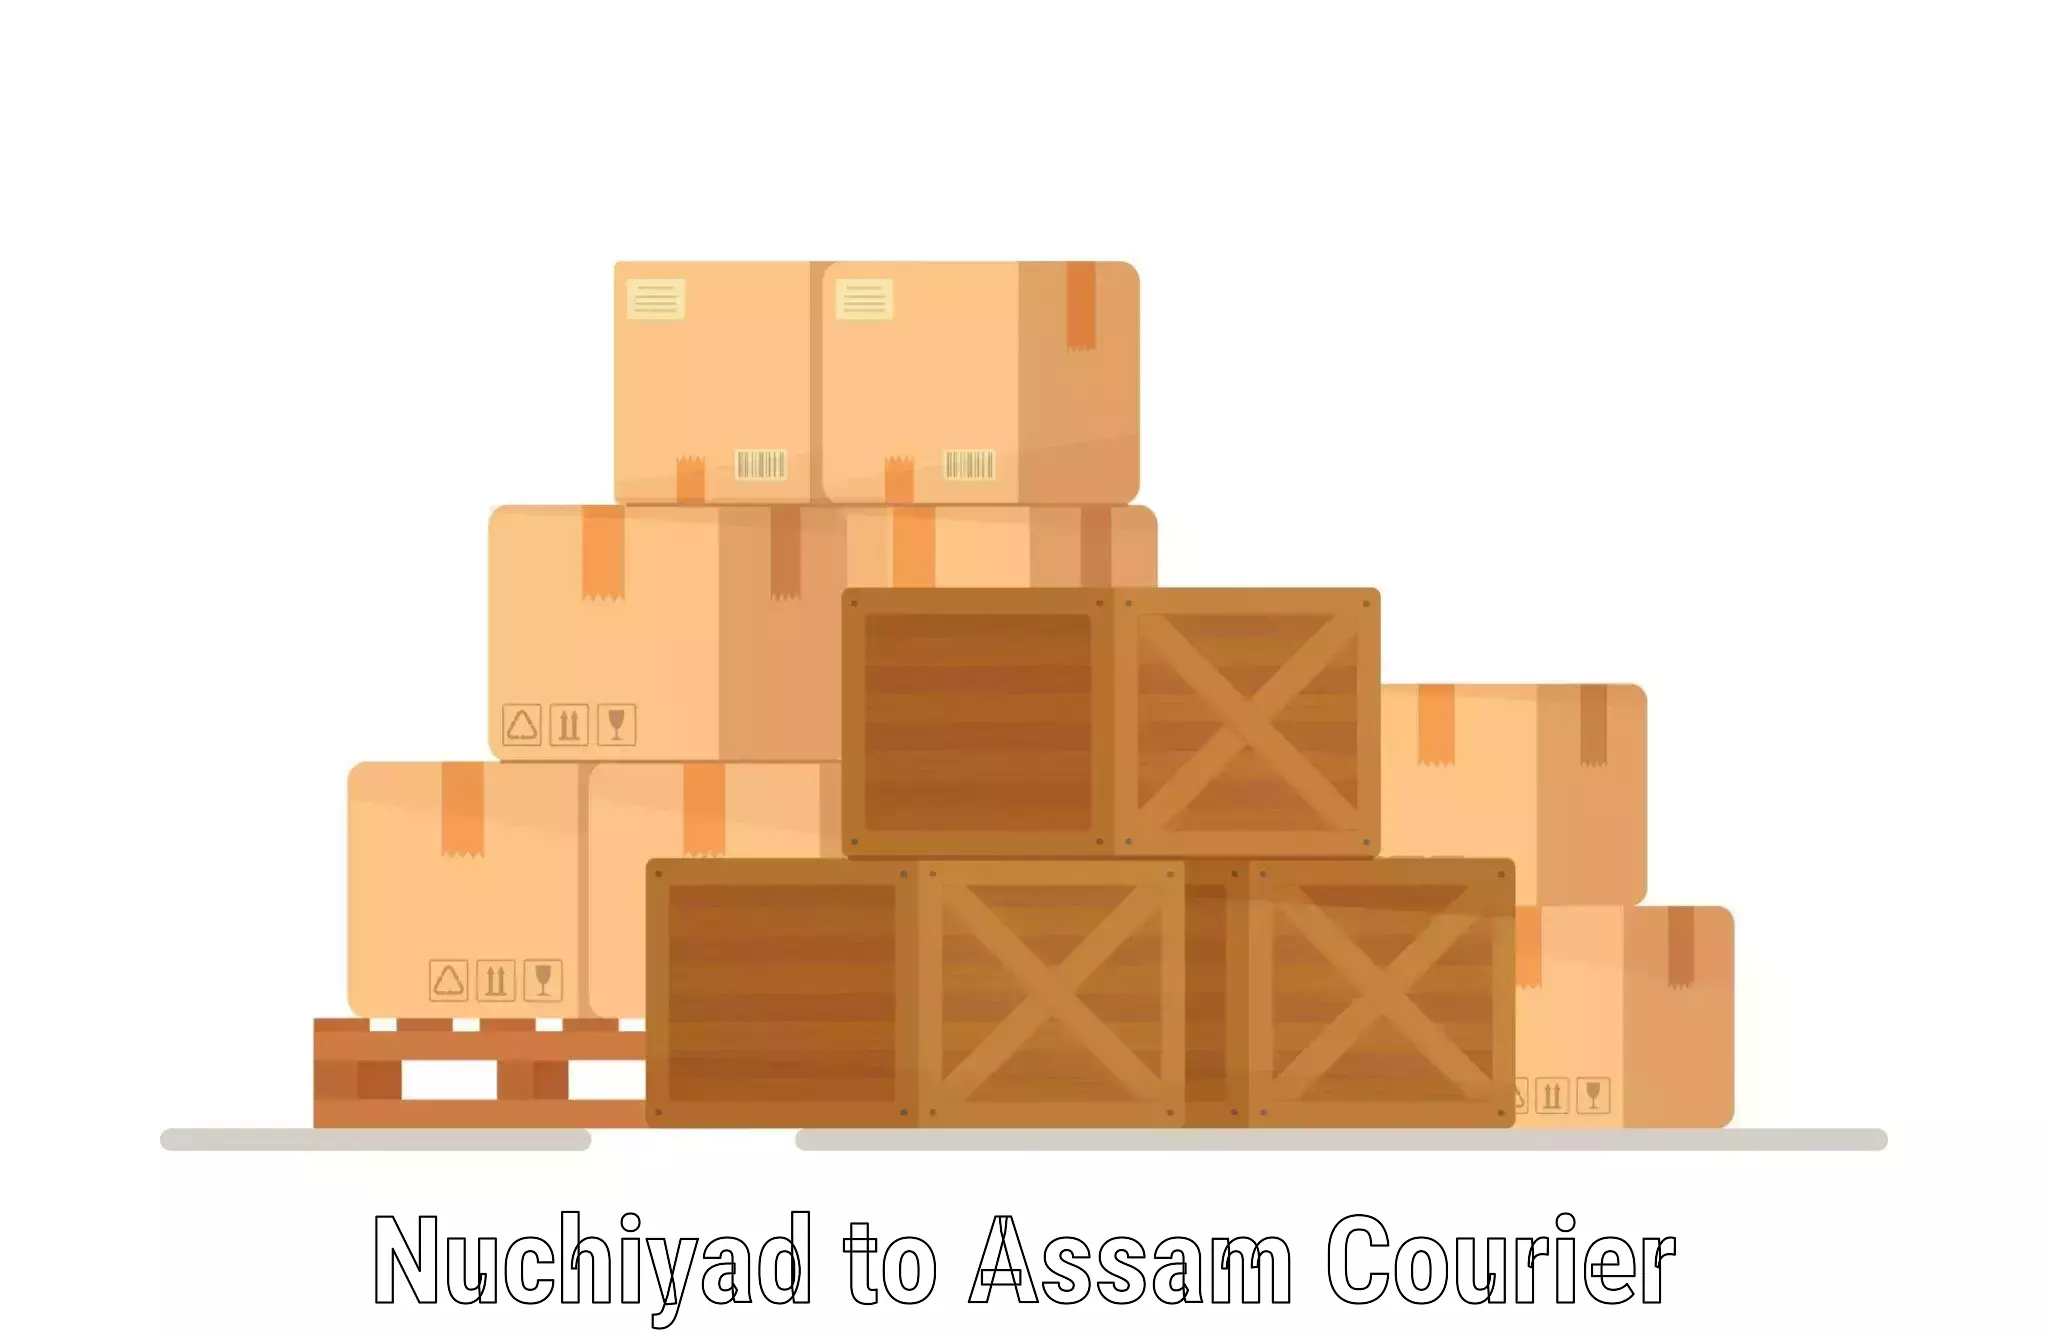 Cargo delivery service Nuchiyad to Udalguri